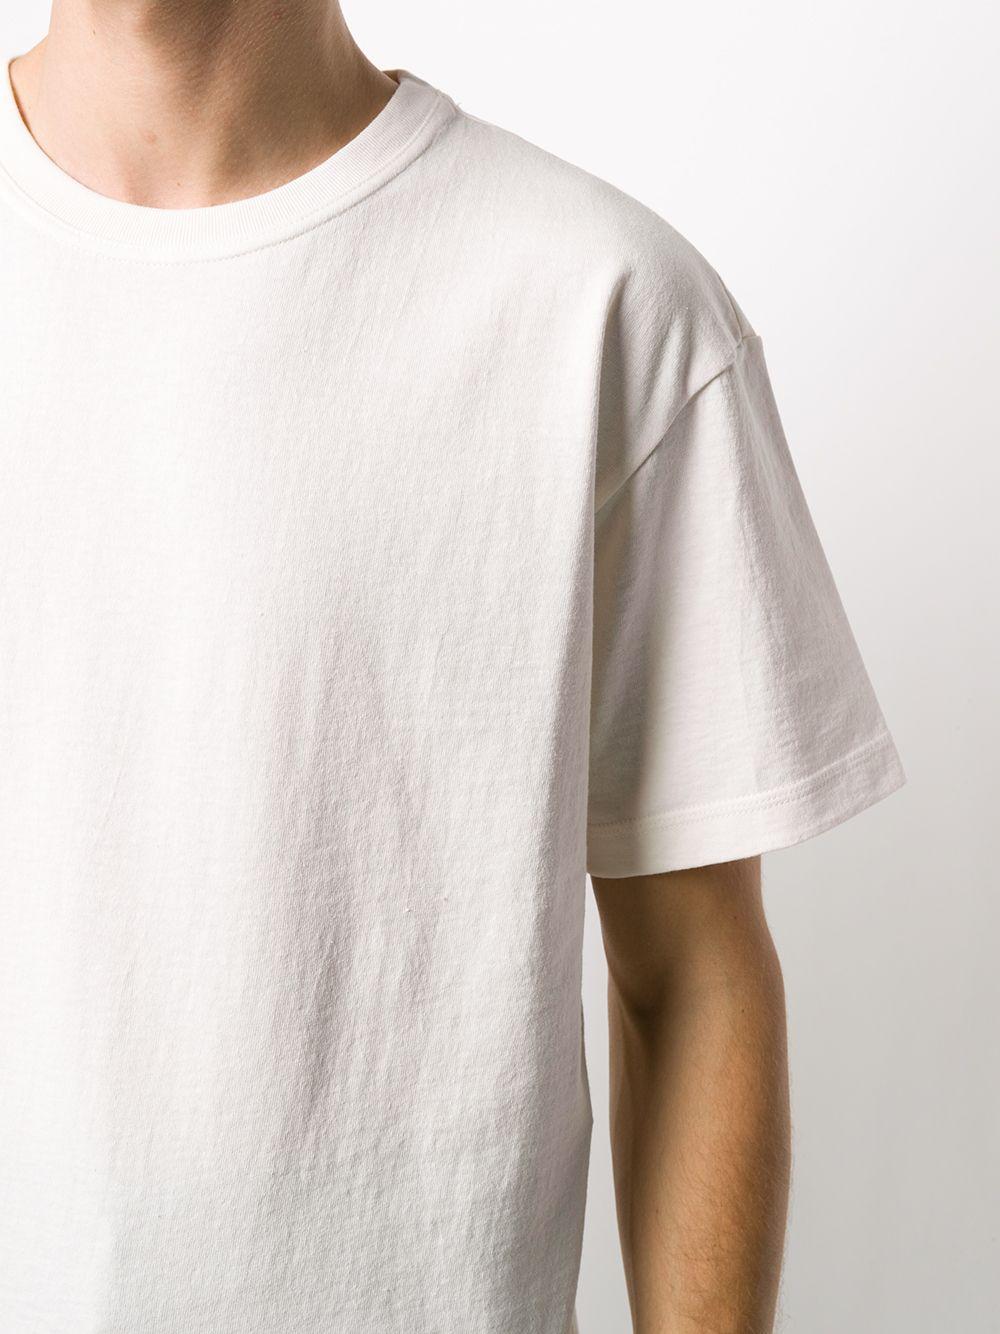 Bottega Veneta Cotton Sunrise Short-sleeve T-shirt in White for Men - Lyst